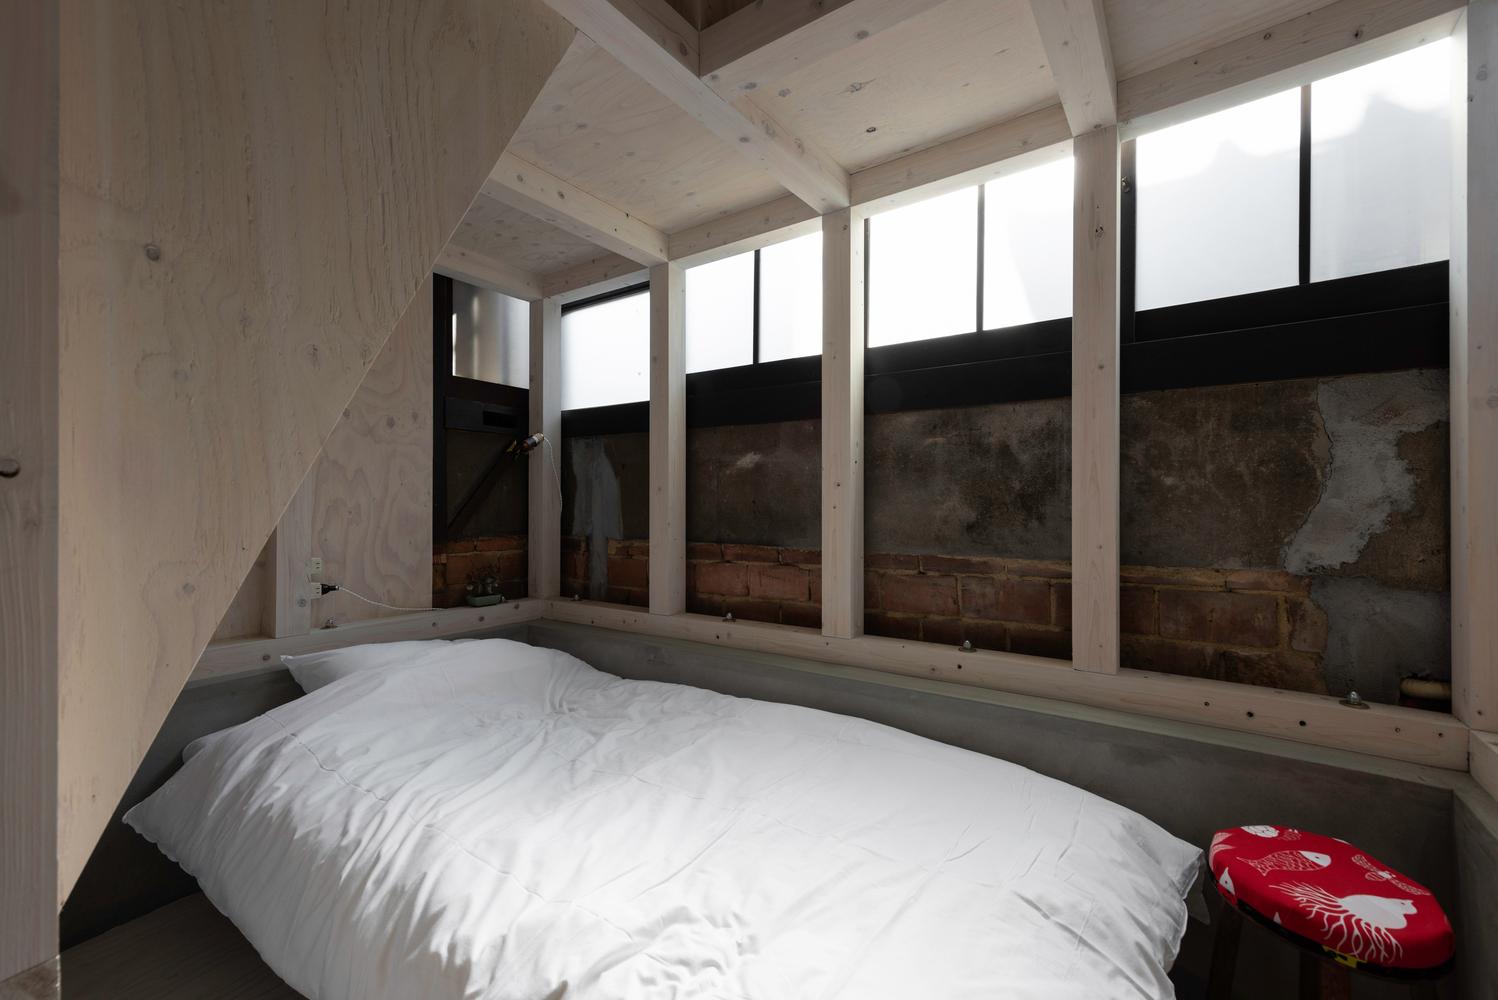 【工匠手藝 x 百年建築】改建自京都町屋的家庭式旅館 結合日本傳統的創意空間